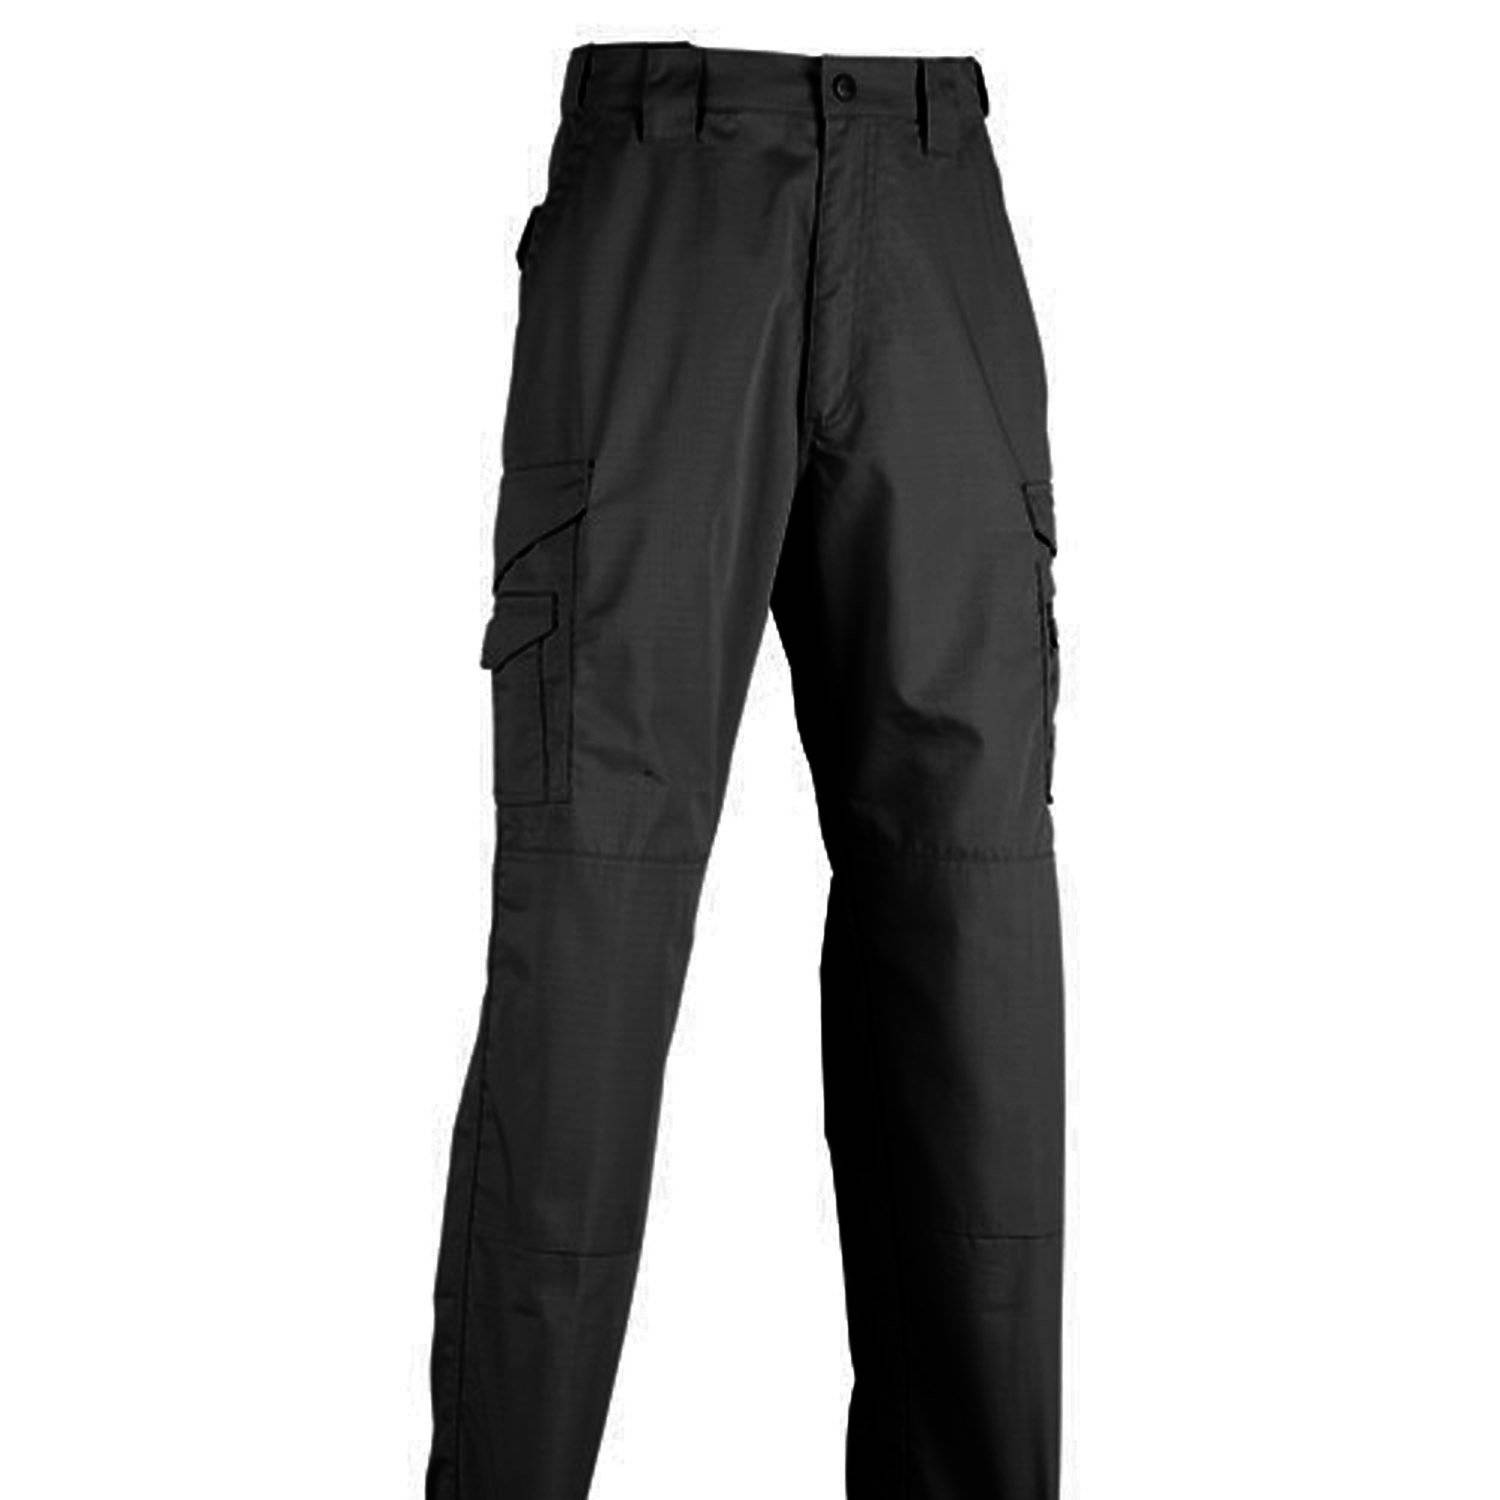 TRU-SPEC 24-7 Series Original Tactical Pants.